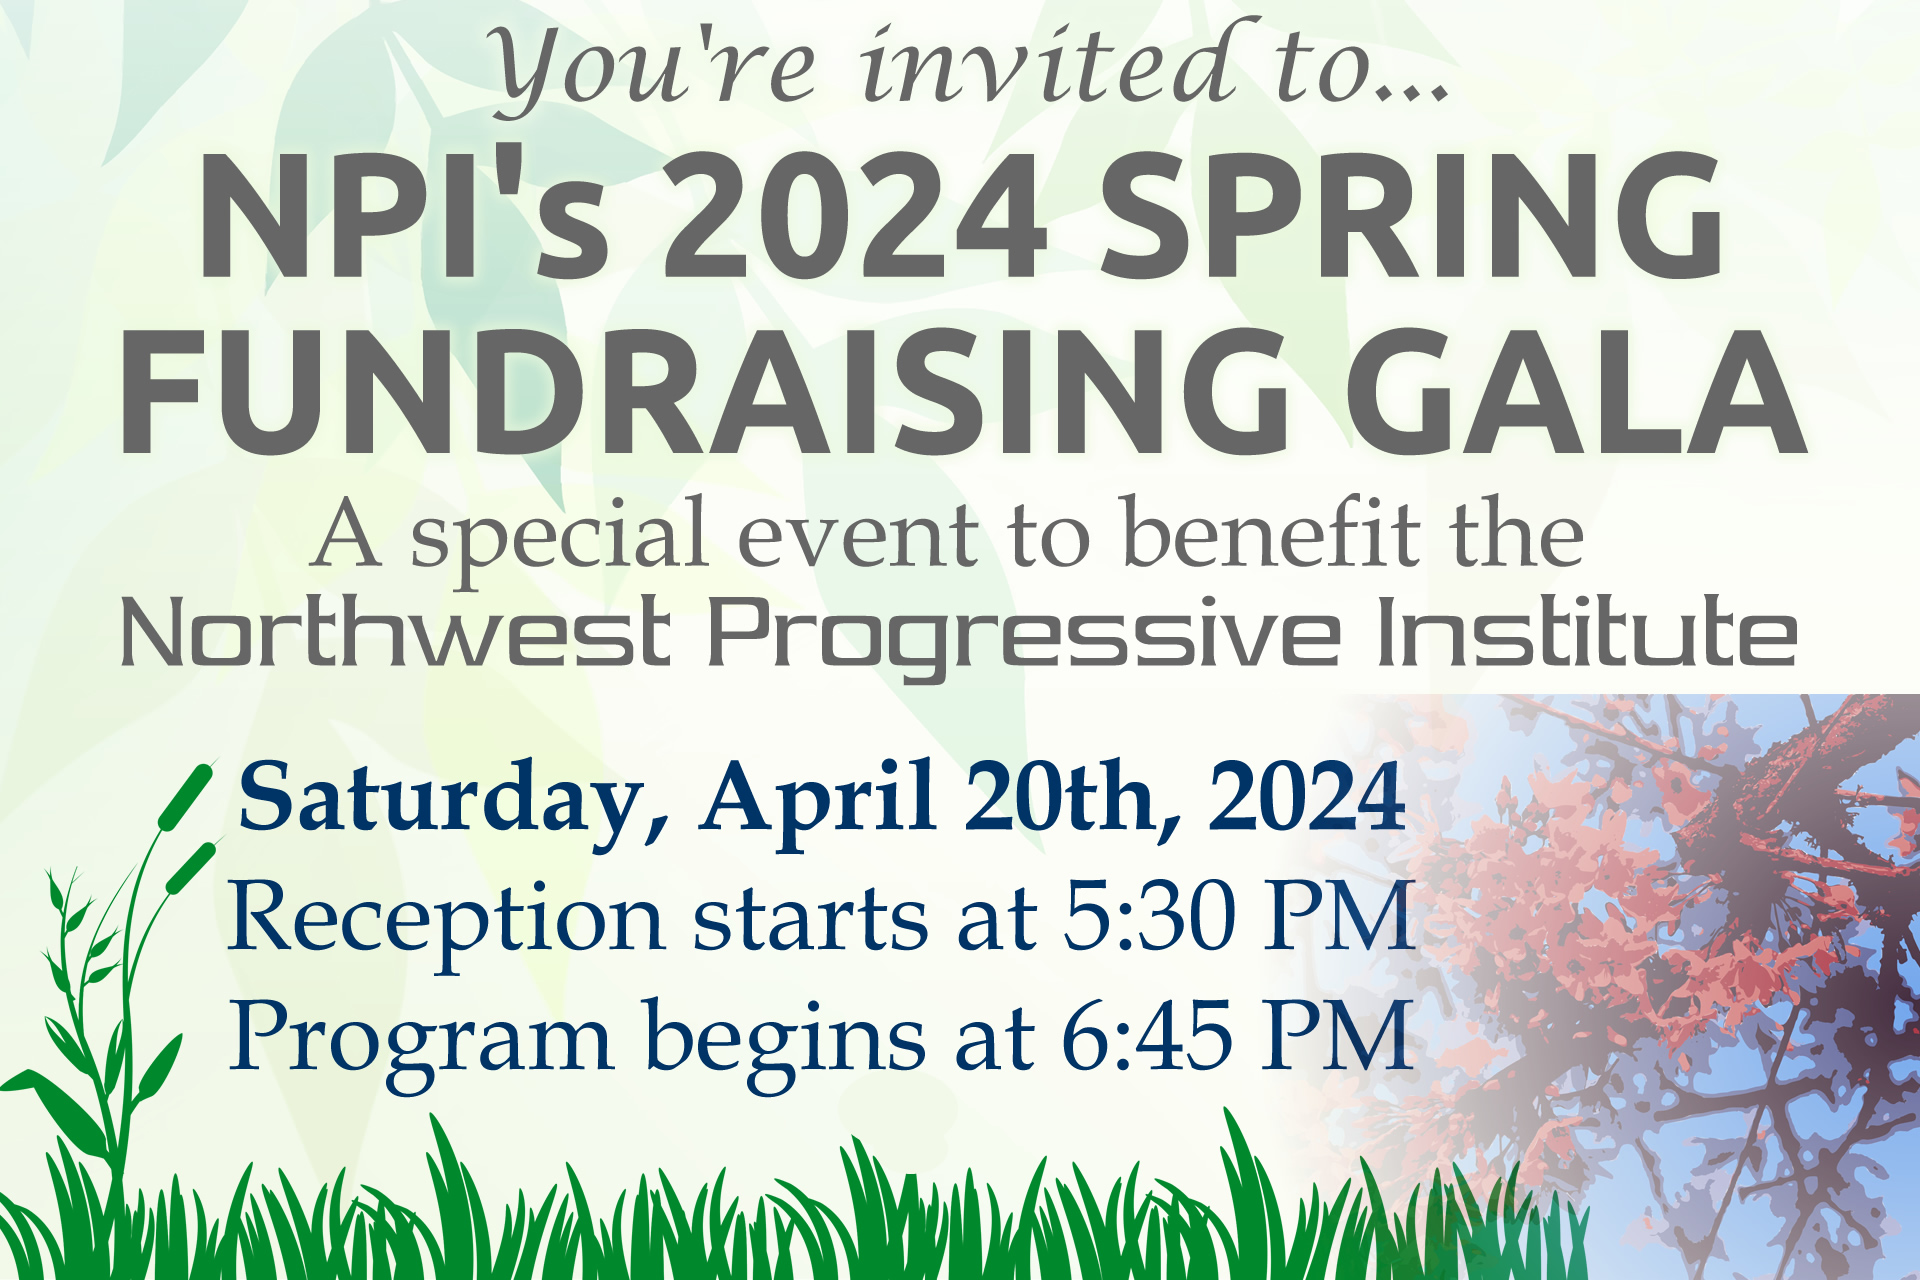 Invitation to NPI's 2024 Spring Fundraising Gala